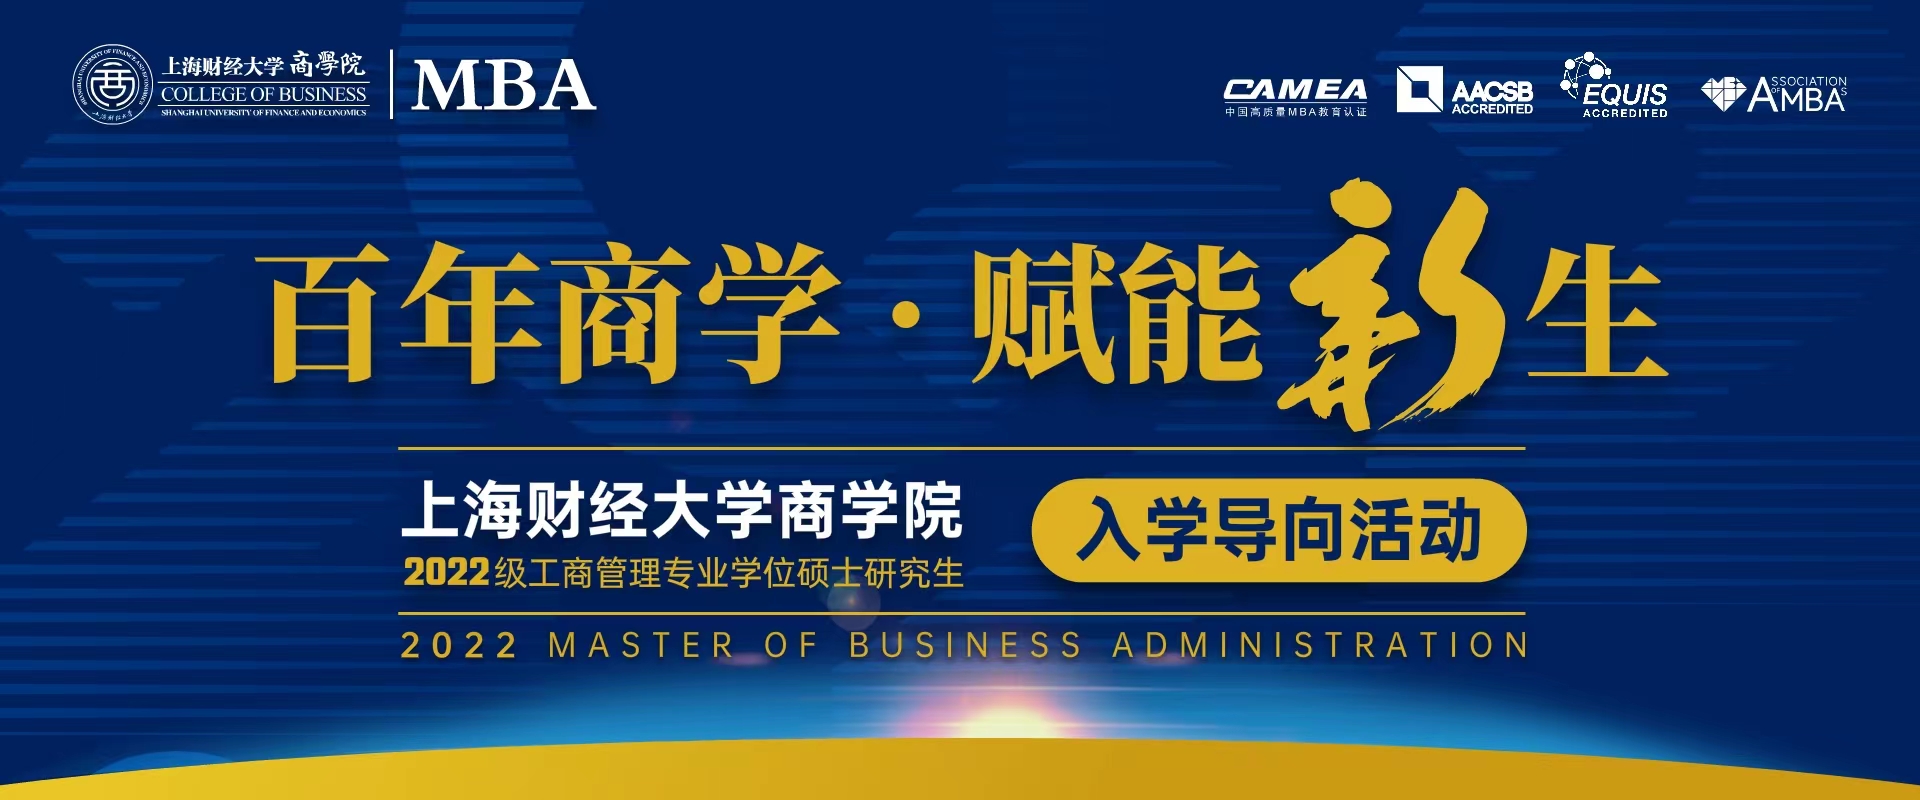 你好·新同学 | 上海财经大学2022级MBA/EMBA新生入学导向活动启航仪式通知 